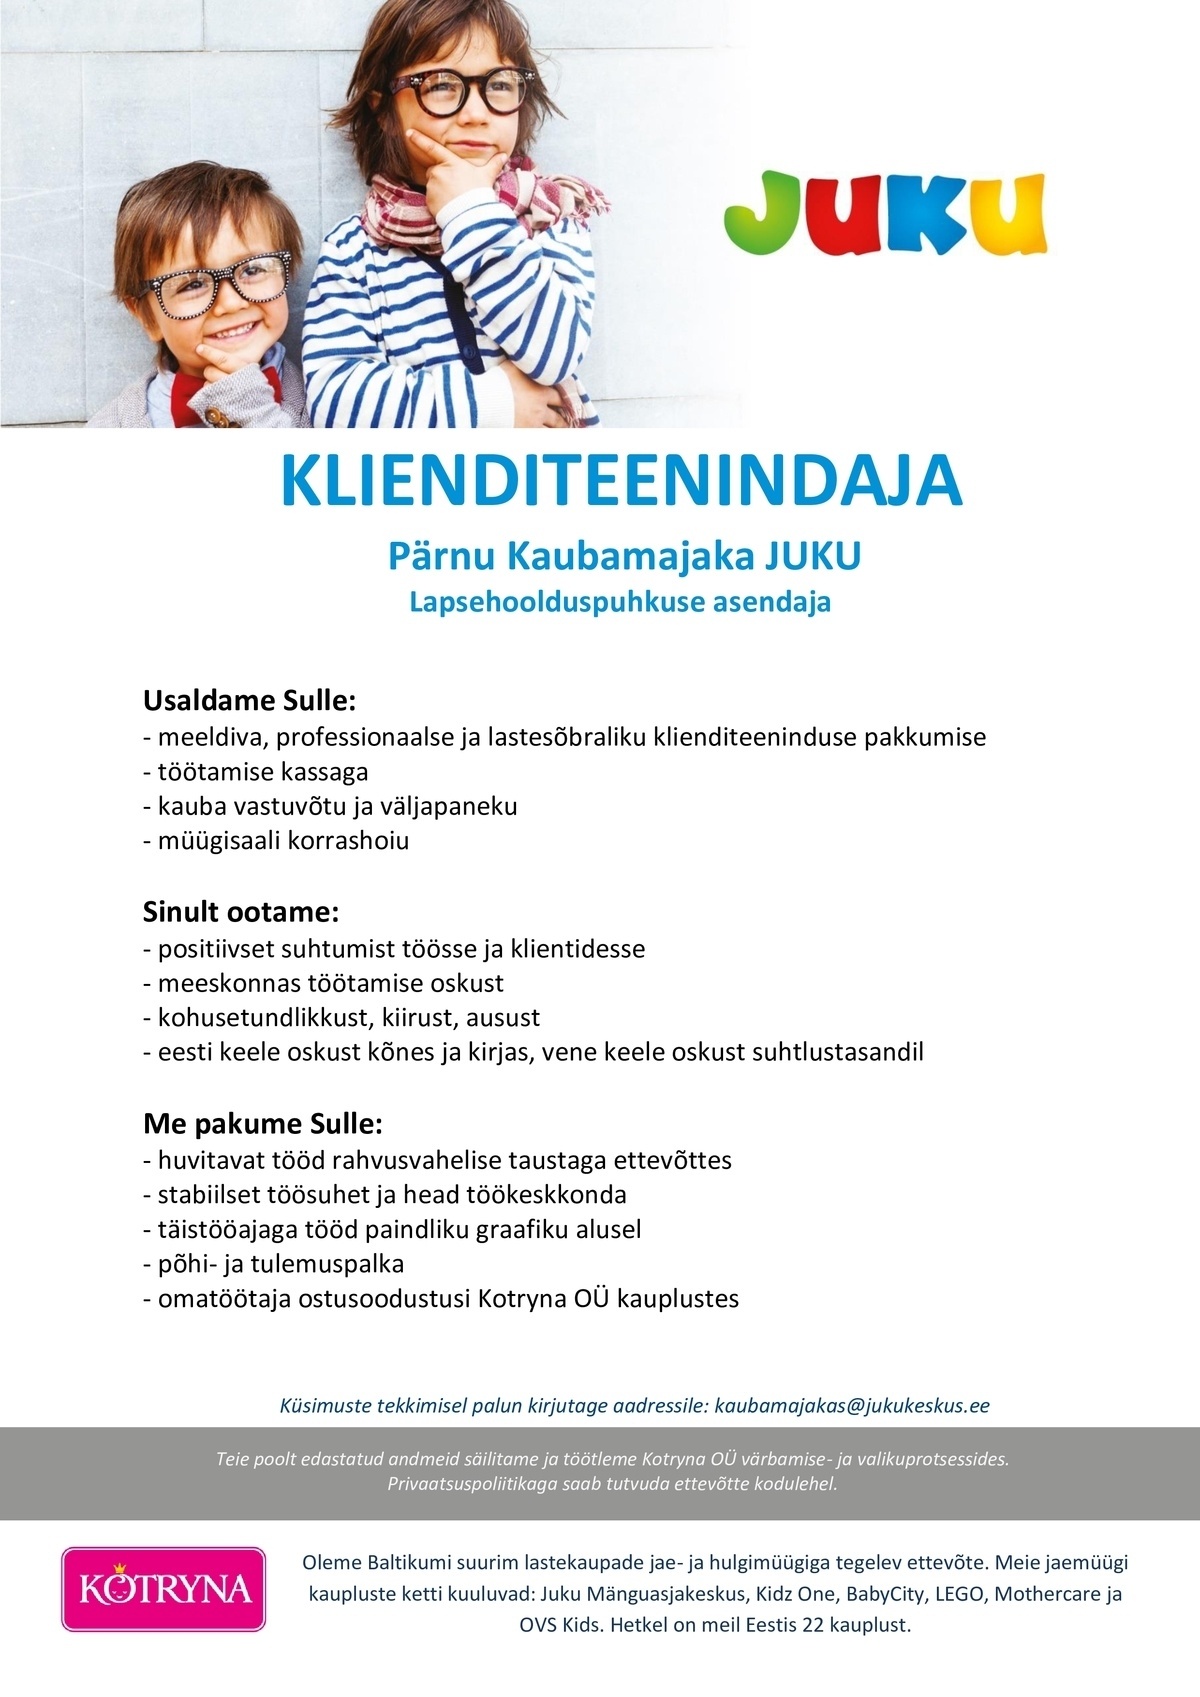 Kotryna OÜ Pärnu Kaubamajaka JUKU klienditeenindaja